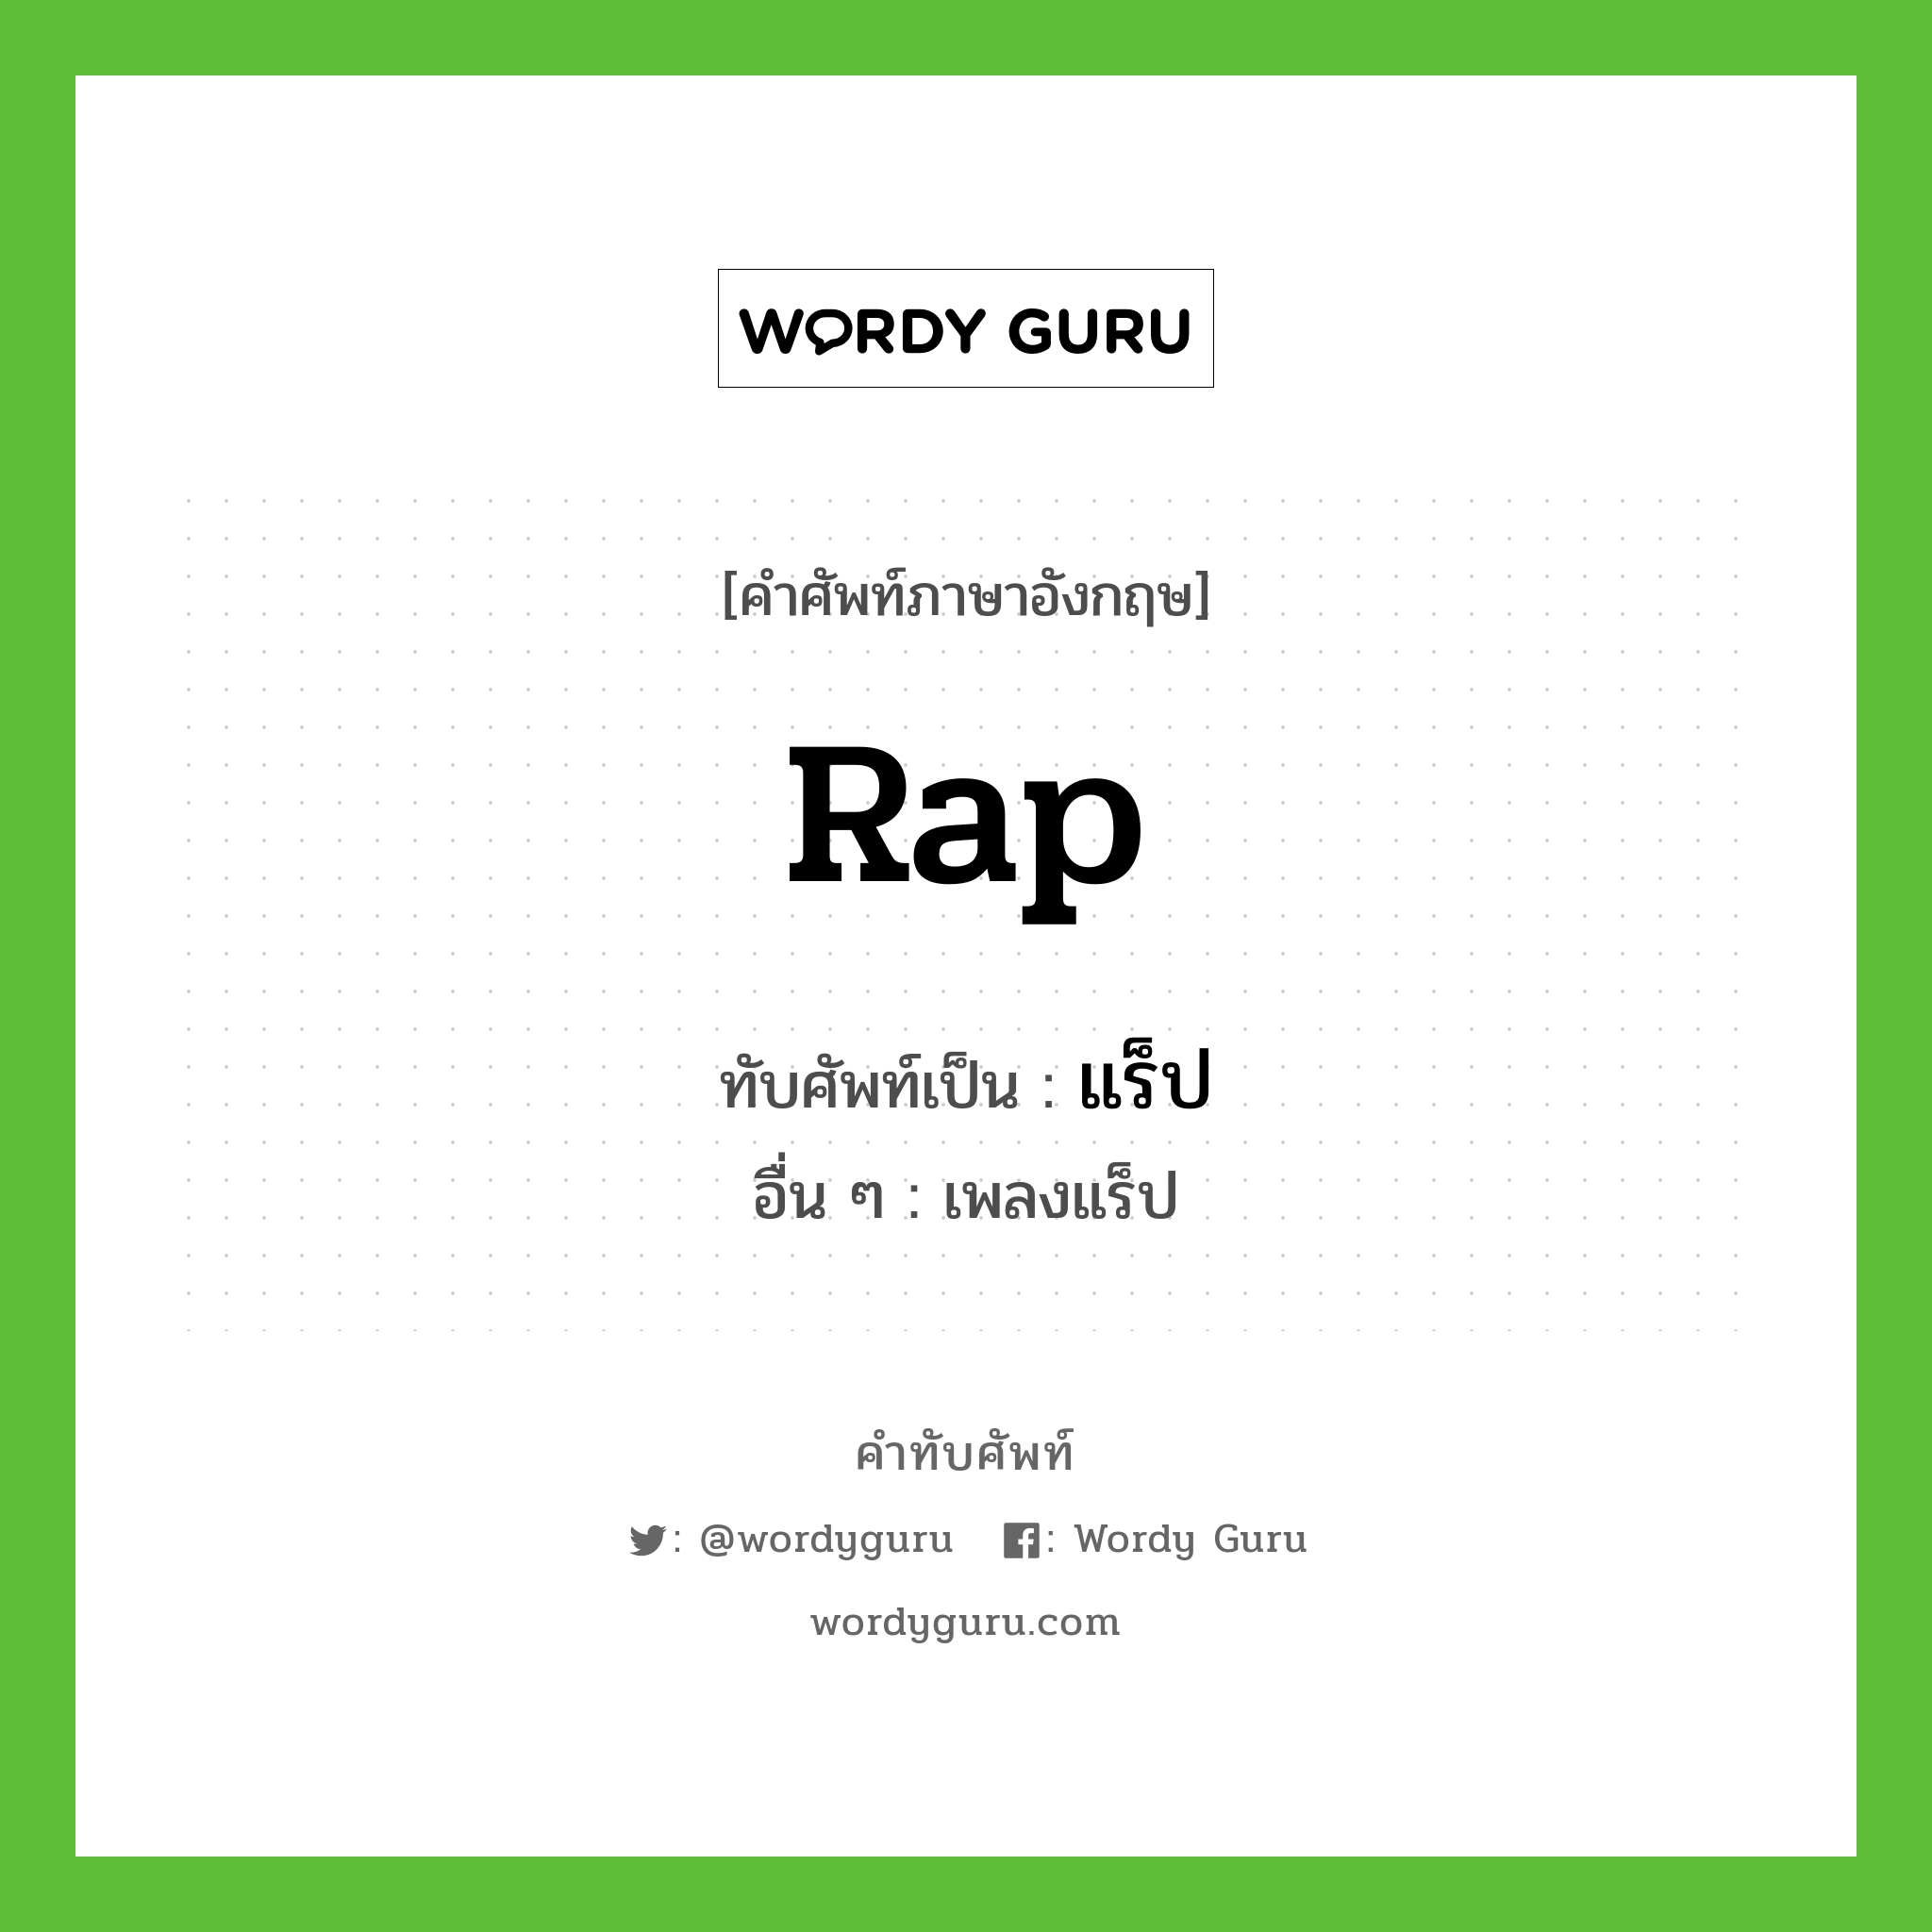 Rap เขียนเป็นคำไทยว่าอะไร?, คำศัพท์ภาษาอังกฤษ Rap ทับศัพท์เป็น แร็ป อื่น ๆ เพลงแร็ป